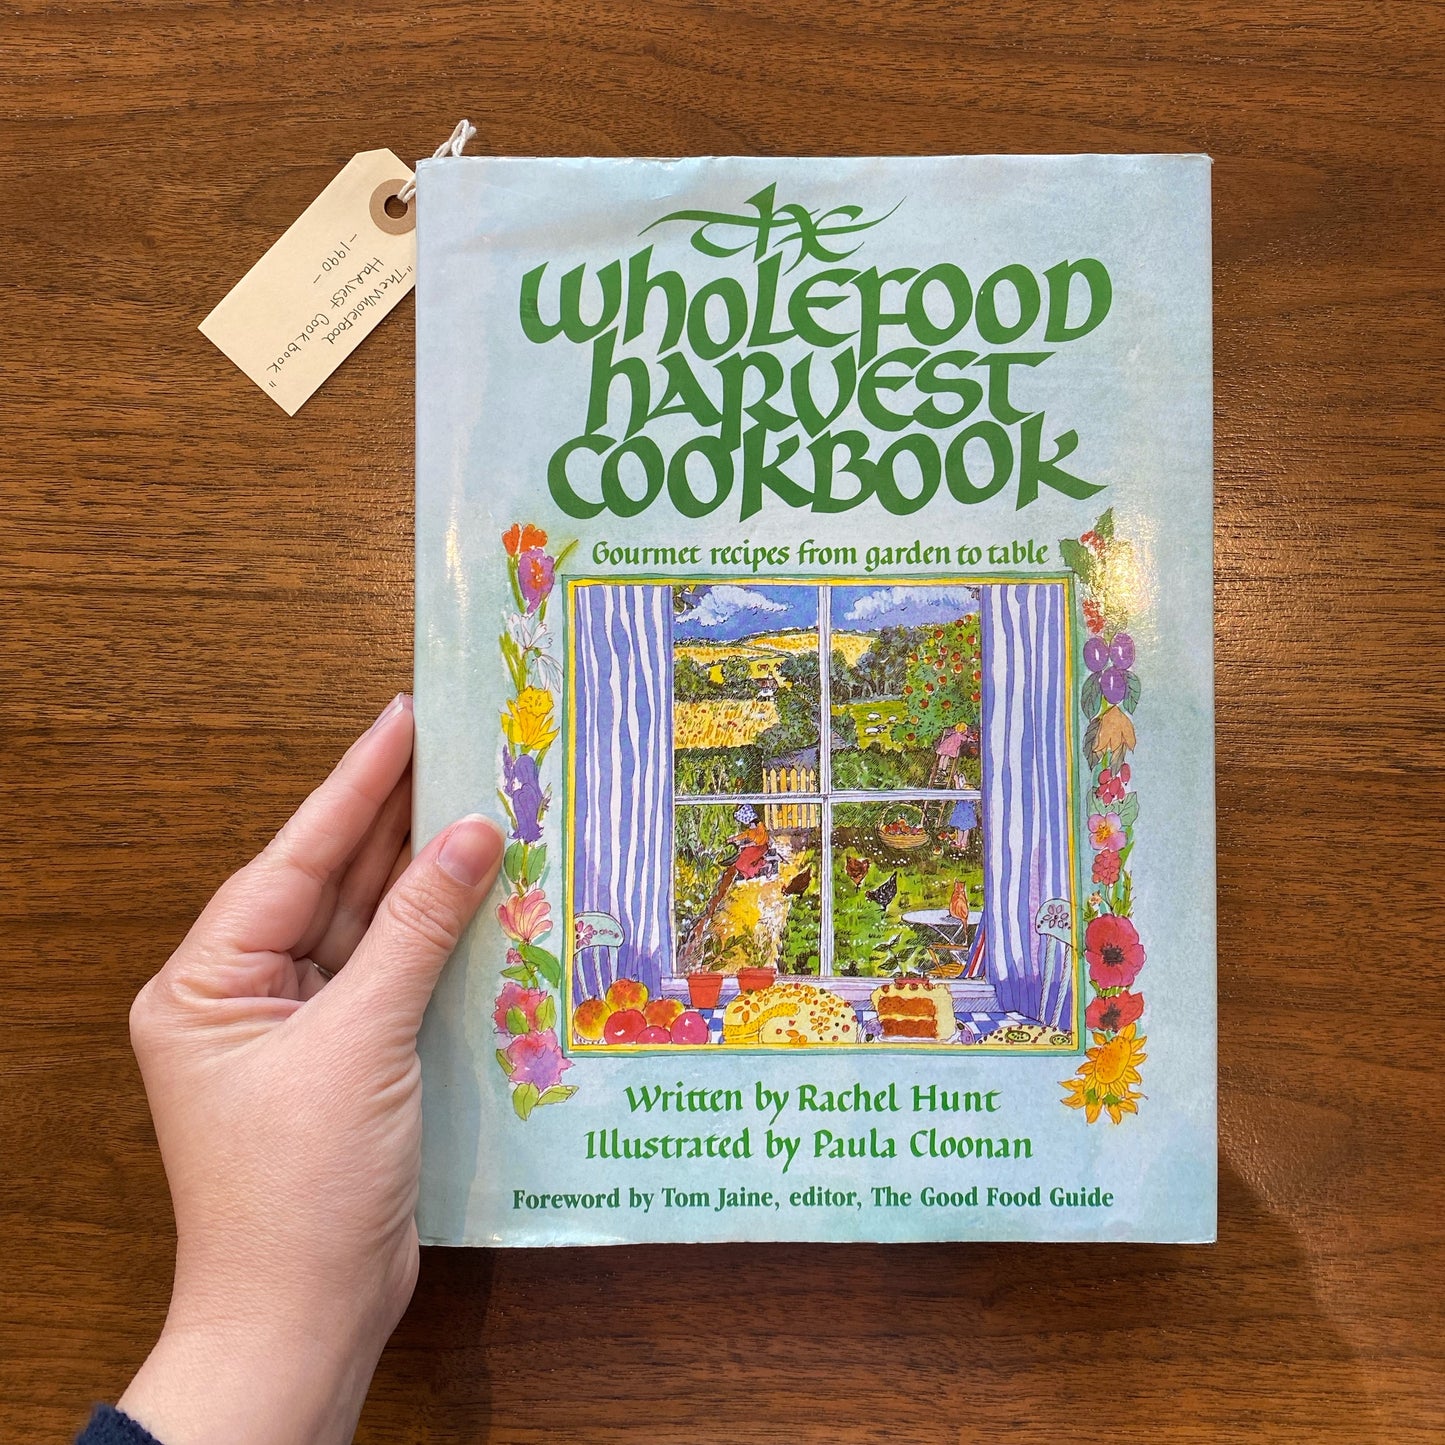 Book: “The Wholefood Harvest Cookbook” (1990)